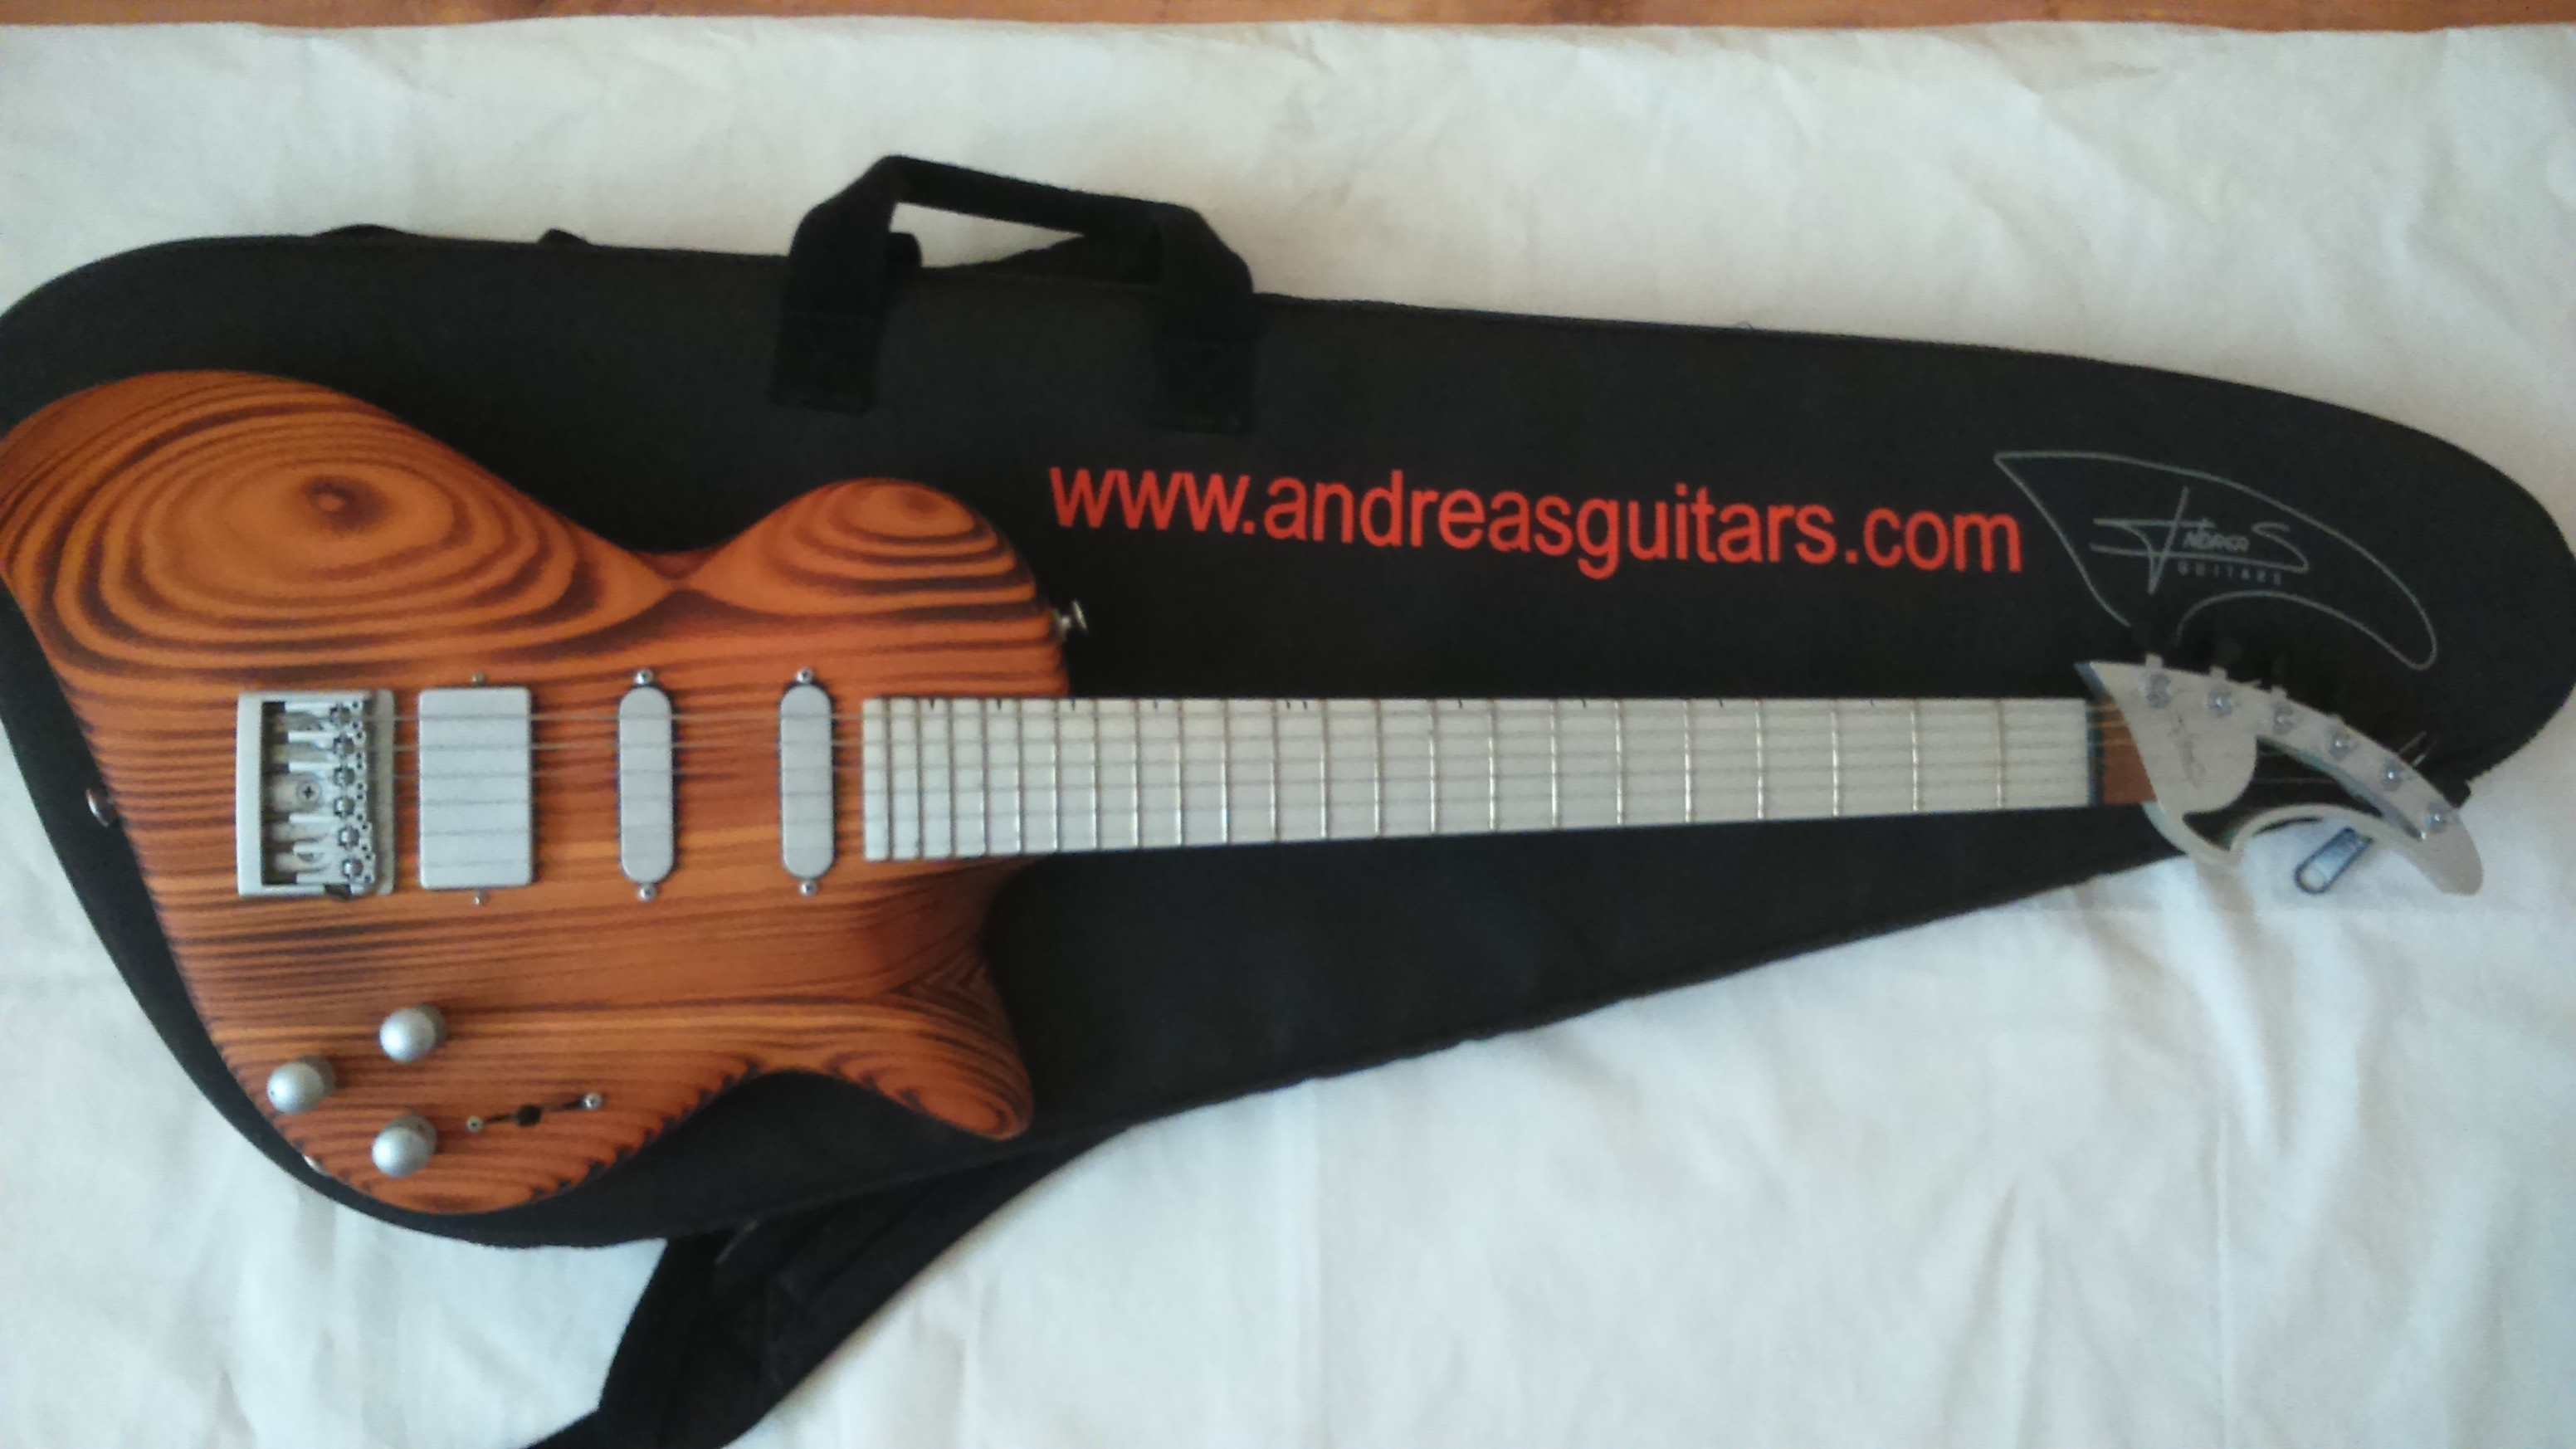 andreas-guitars-shark-1048078.jpg